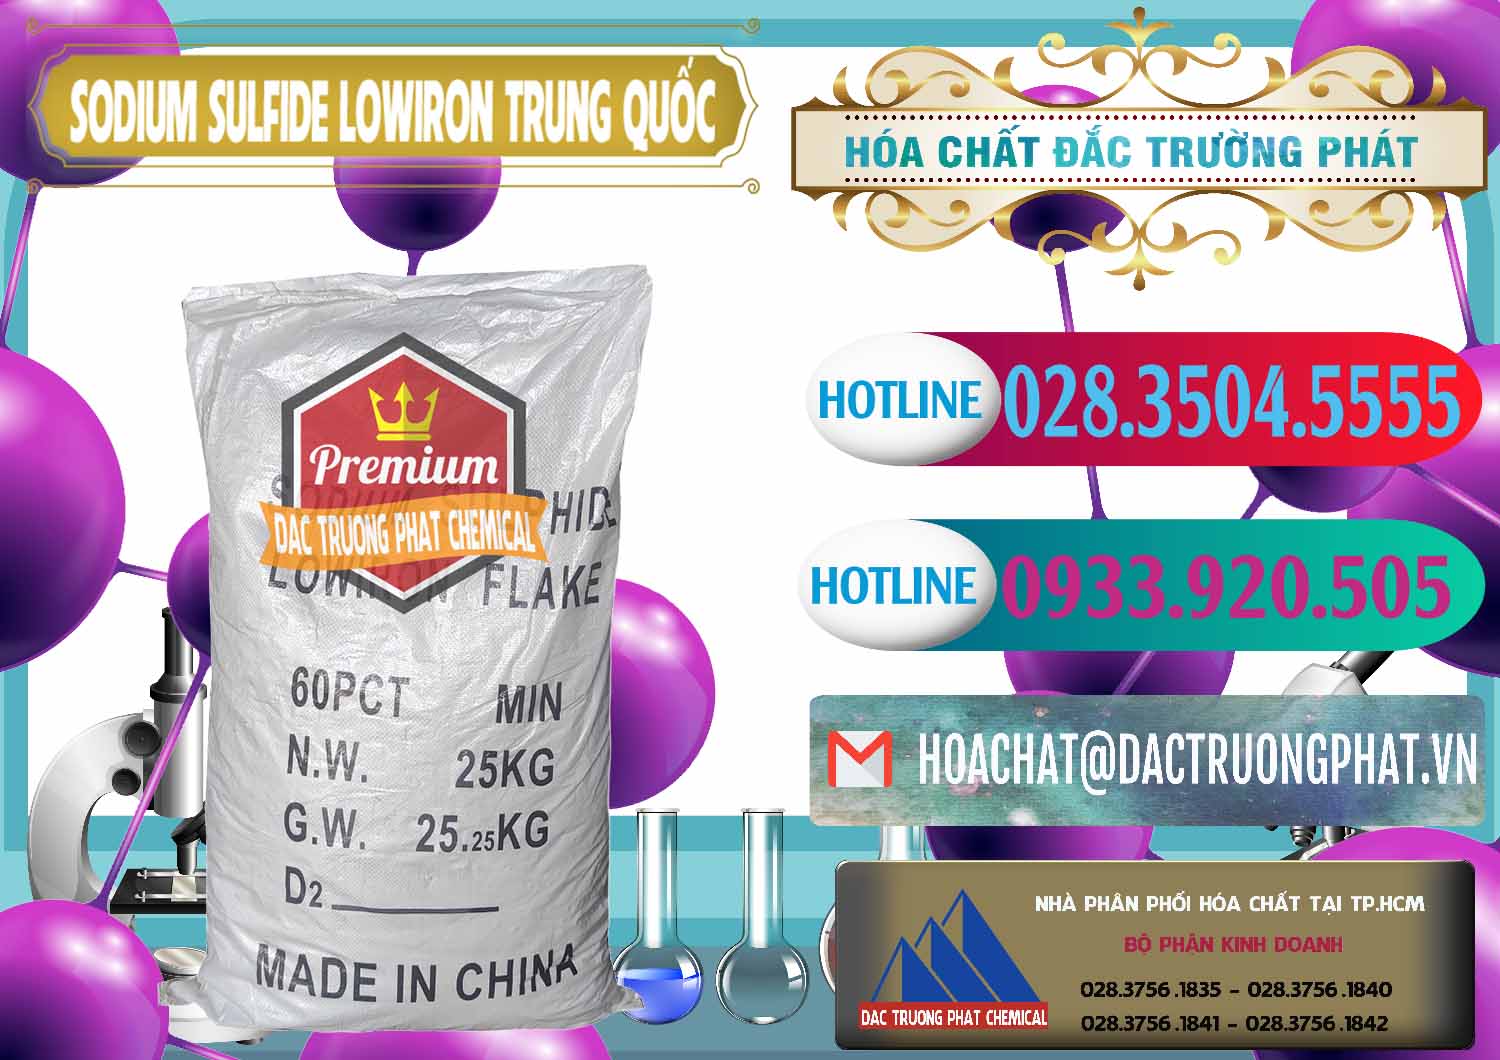 Nơi cung cấp _ bán Sodium Sulfide NA2S – Đá Thối Lowiron Trung Quốc China - 0227 - Cung cấp _ nhập khẩu hóa chất tại TP.HCM - truongphat.vn